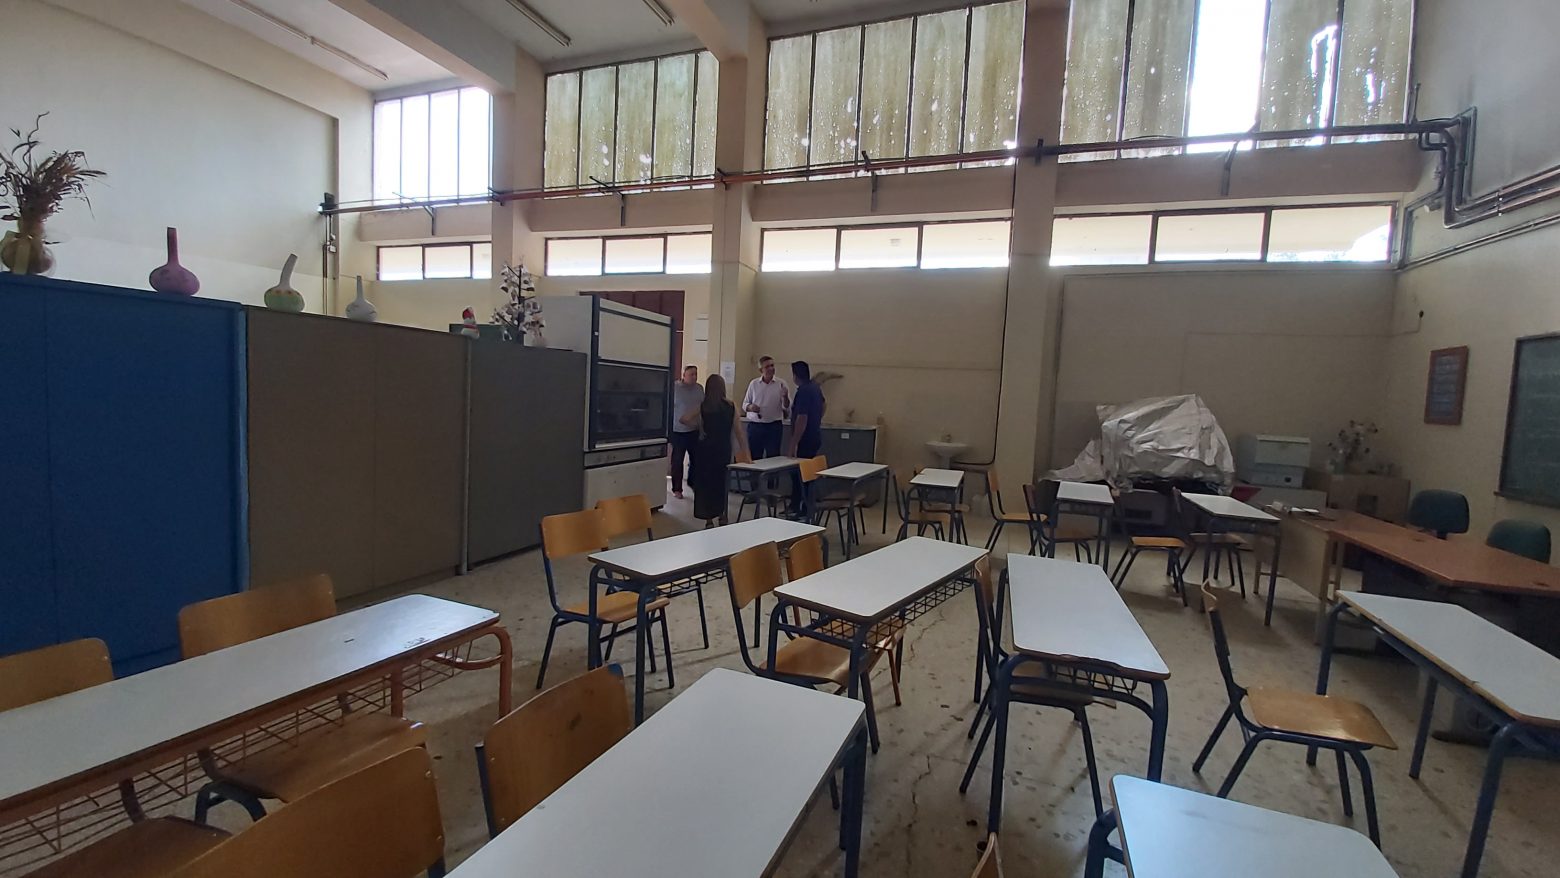 Ο Δήμος Αρταίων αναλαμβάνει την στέγαση και την διαμόρφωση του νέου Ειδικού Σχολείου στο ΕΠΑΛ Άρτας